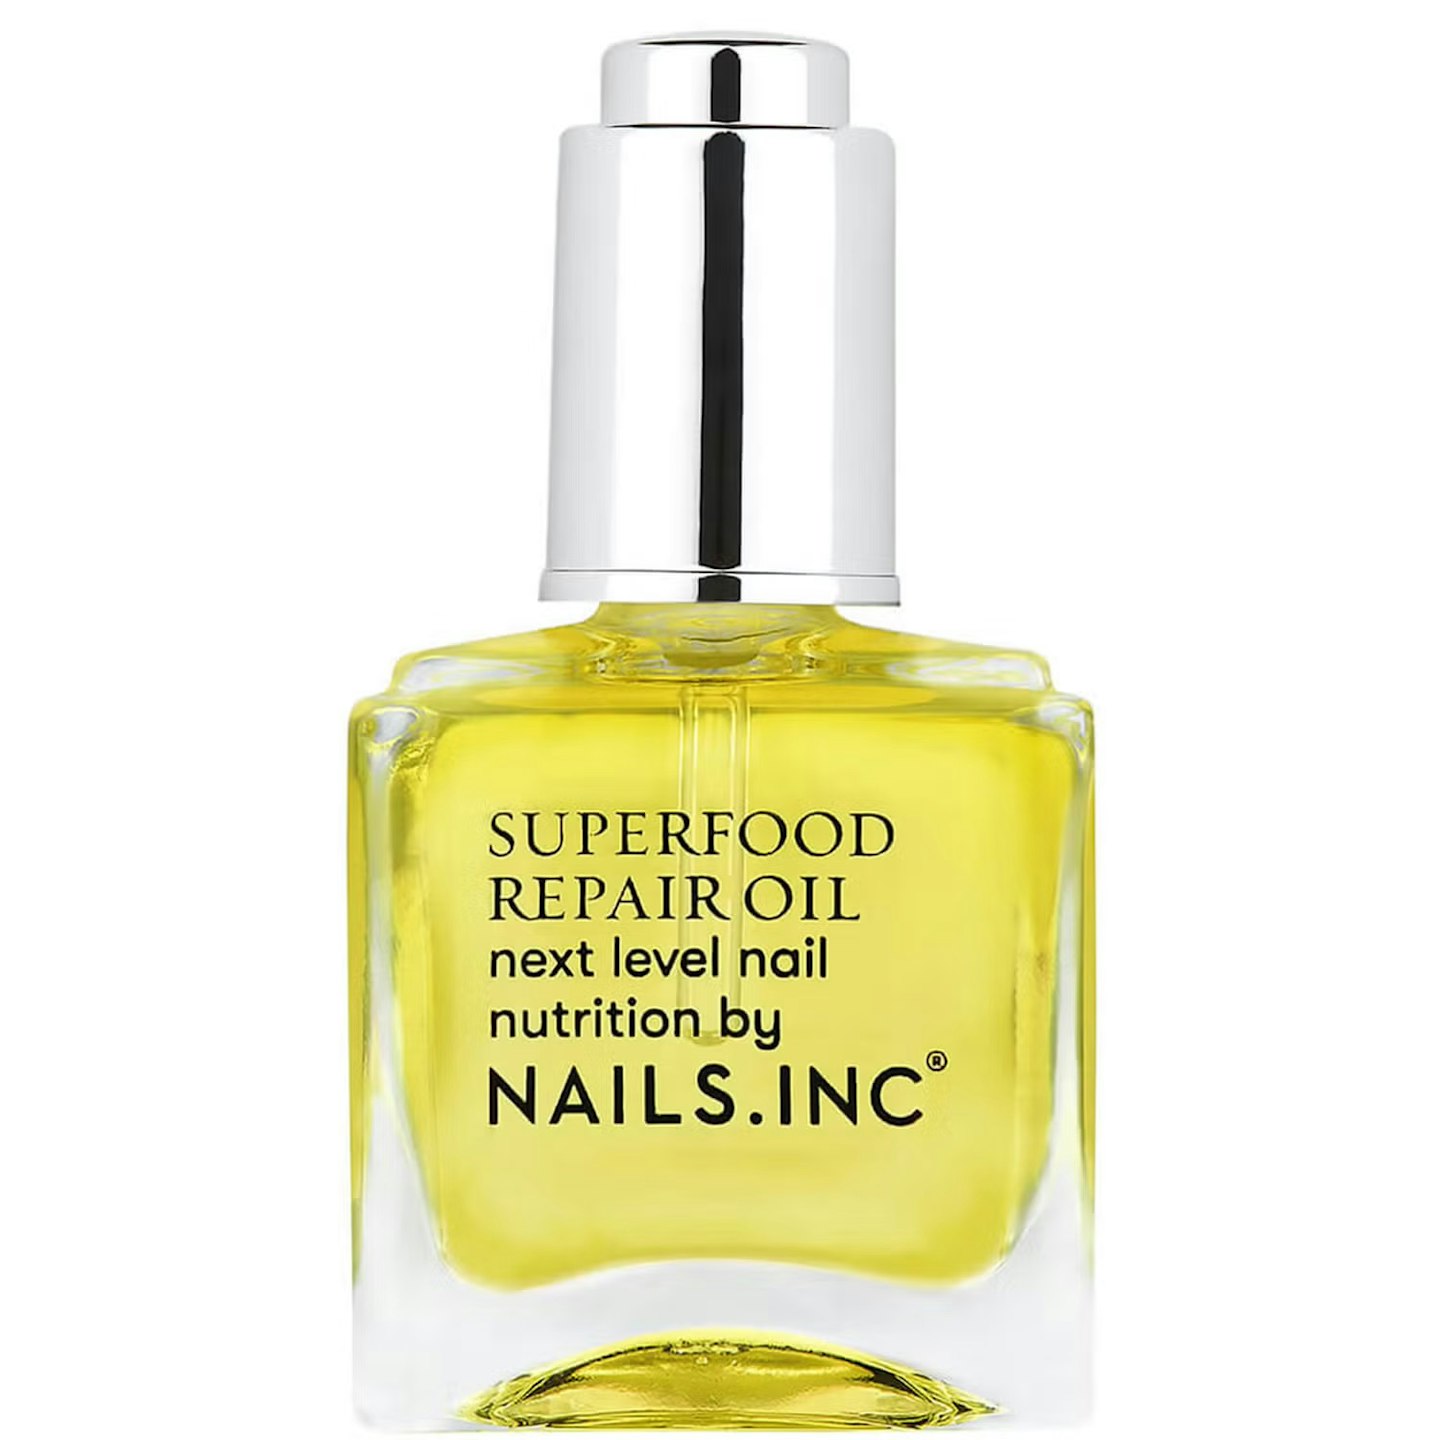 Nails inc. Superfood Repair Oil